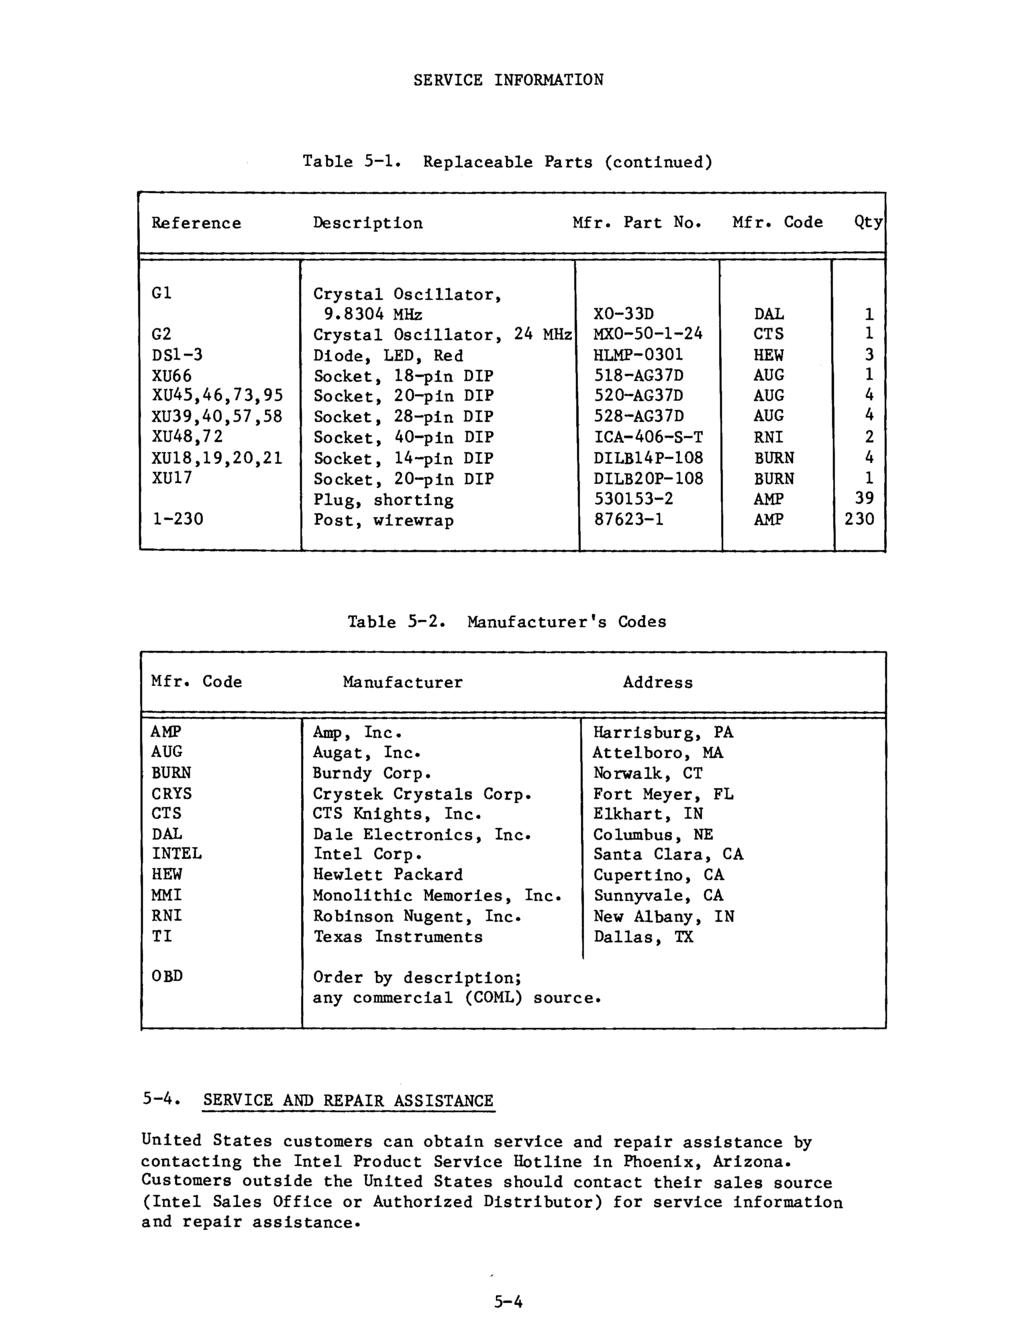 SERVCE NFORMATON Table 5-1. Replaceable Parts (continued) Reference Description Mfr. Part No. Mfr. Code Qty G1 G2 DSl-3 XU66 XU45,46,73,95 XU39,40,57,58 XU48,72 XU18,19,20,21 XU17 1-230 Crystal Oscillator, 9.